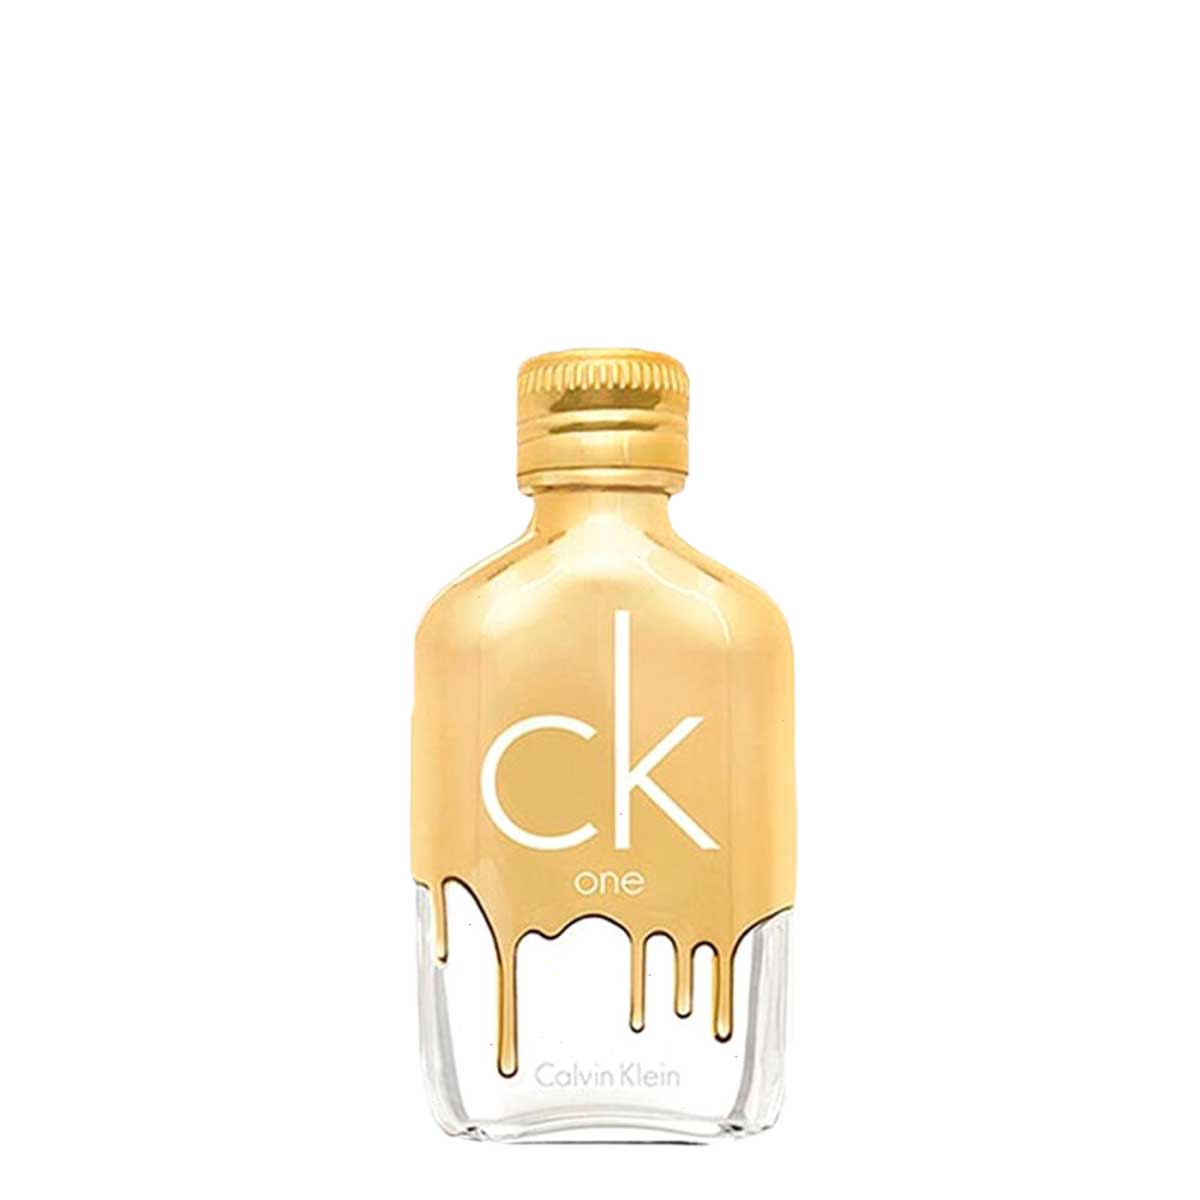 Calvin Klein CK One Gold Mini Size